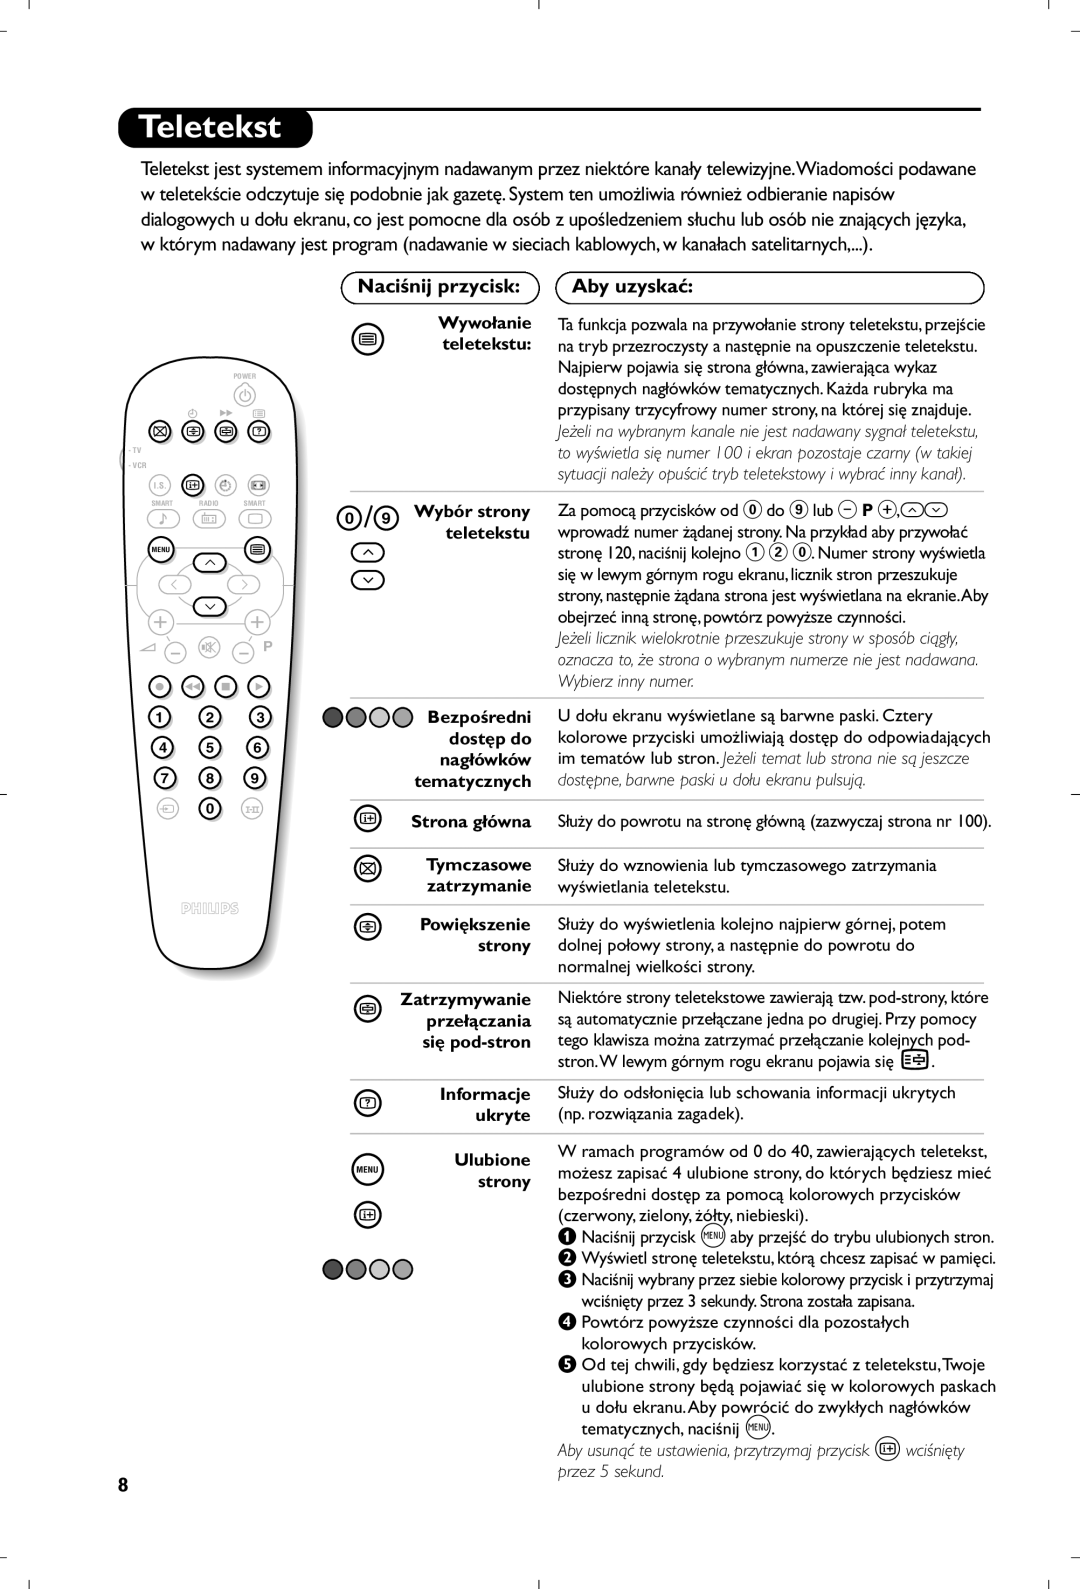 Philips 21PT4457/58 manual Teletekst, Naciśnij przycisk, + +, Aby uzyskać, Wywołanie ¤ teletekstu, ” - - P, Wybór strony 